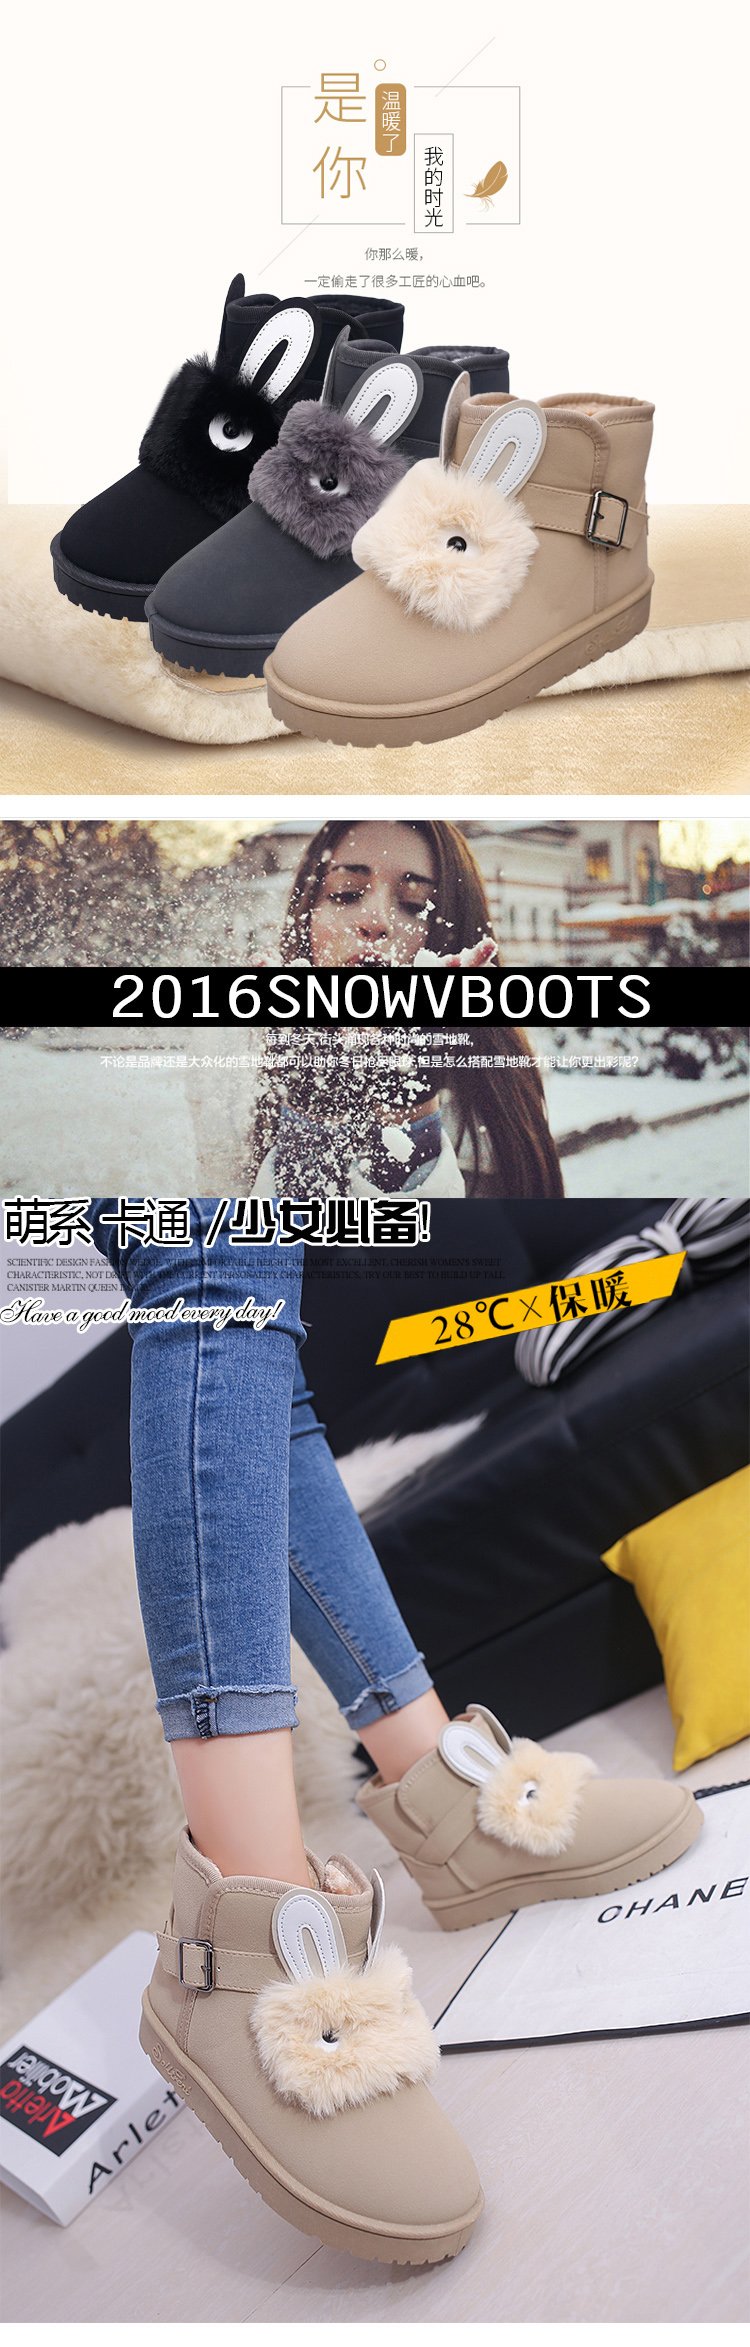 雪地靴女短筒2017冬季新款韩版百搭学生短靴保暖加绒加厚鞋子棉鞋